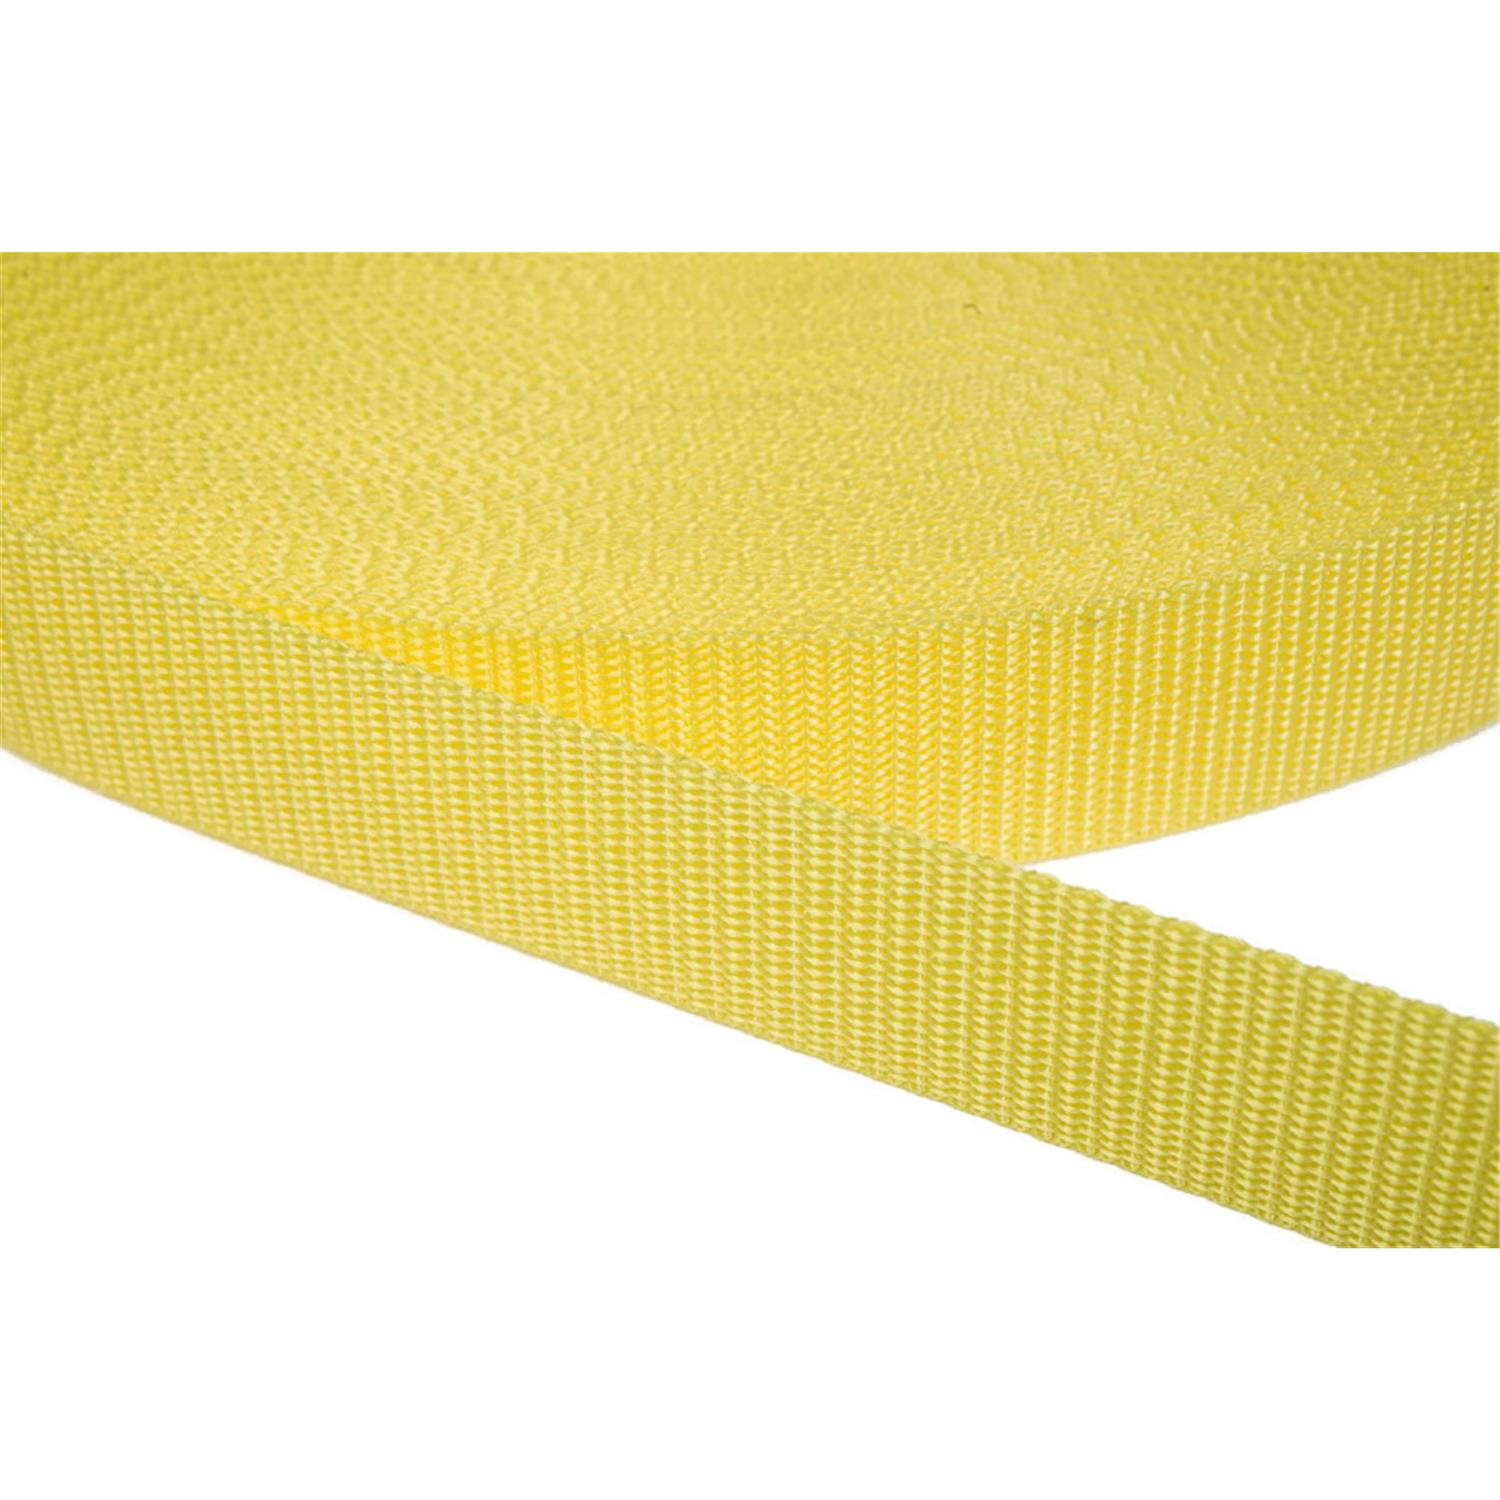 Gurtband 20mm breit aus Polypropylen in 41 Farben 09 - zitronengelb 12 Meter